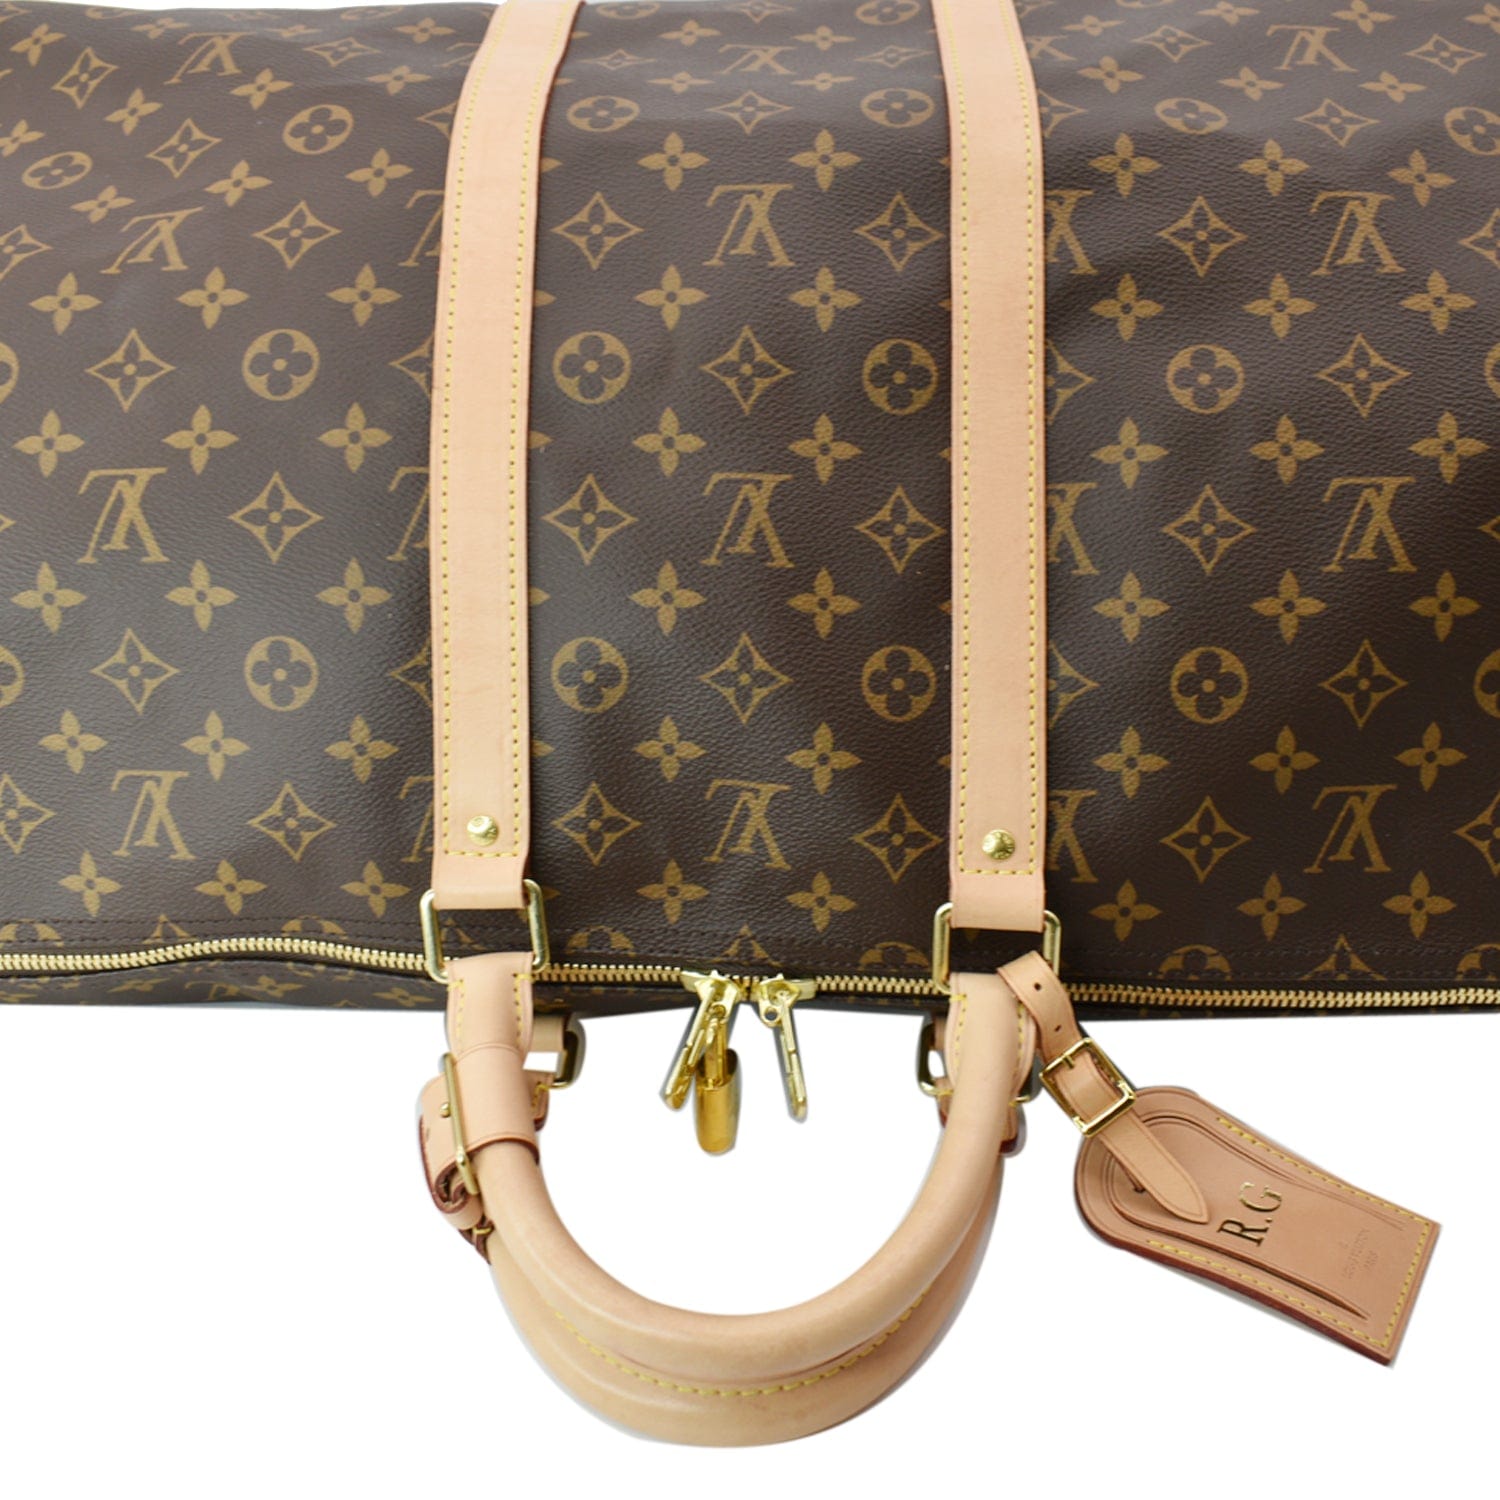 Keepall cloth travel bag Louis Vuitton Brown in Cloth - 31515854